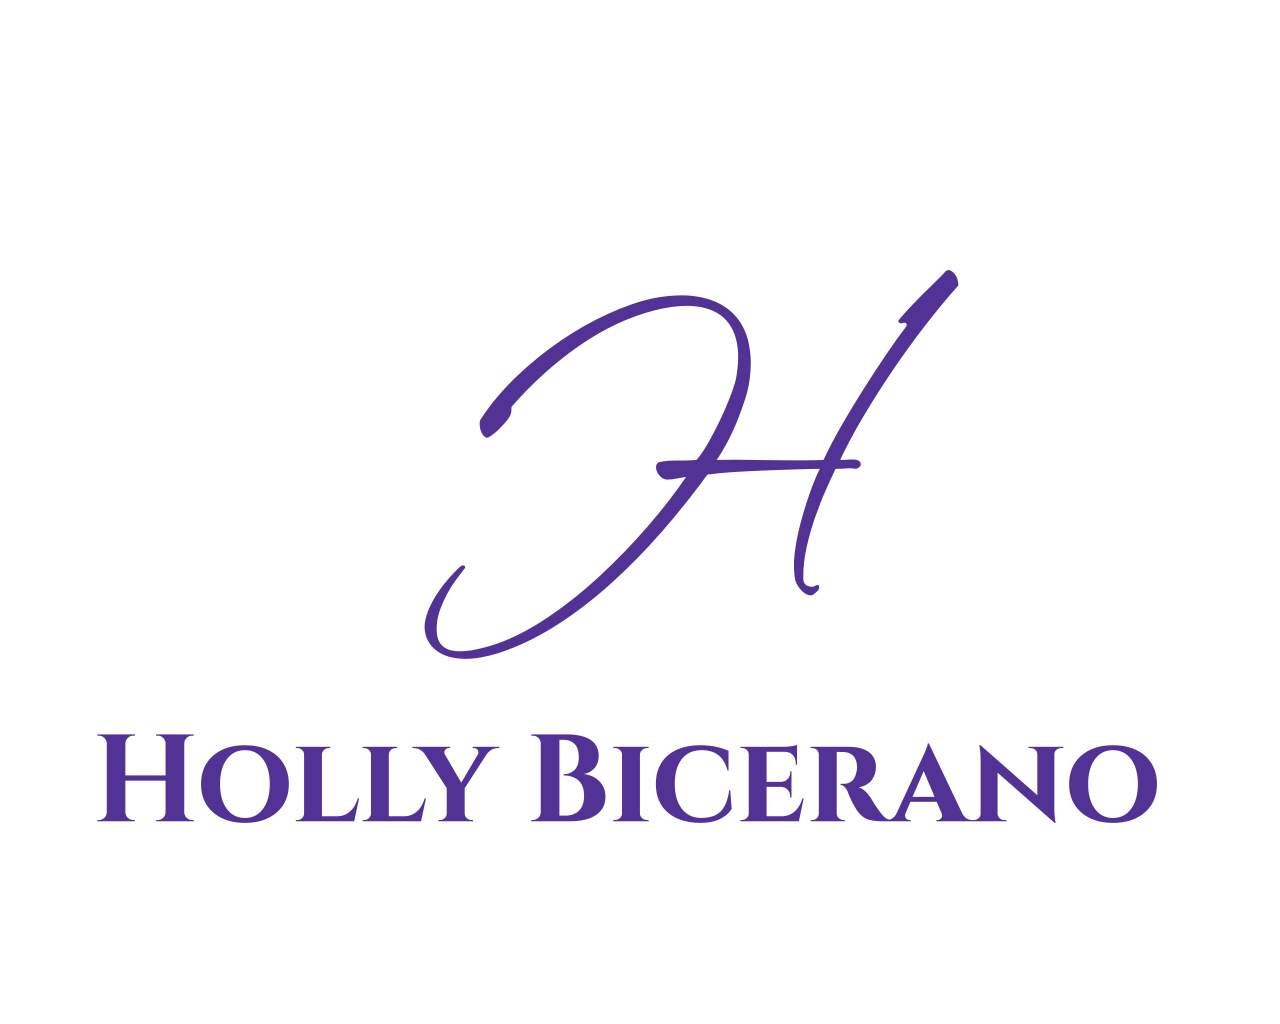 Holly Bicerano